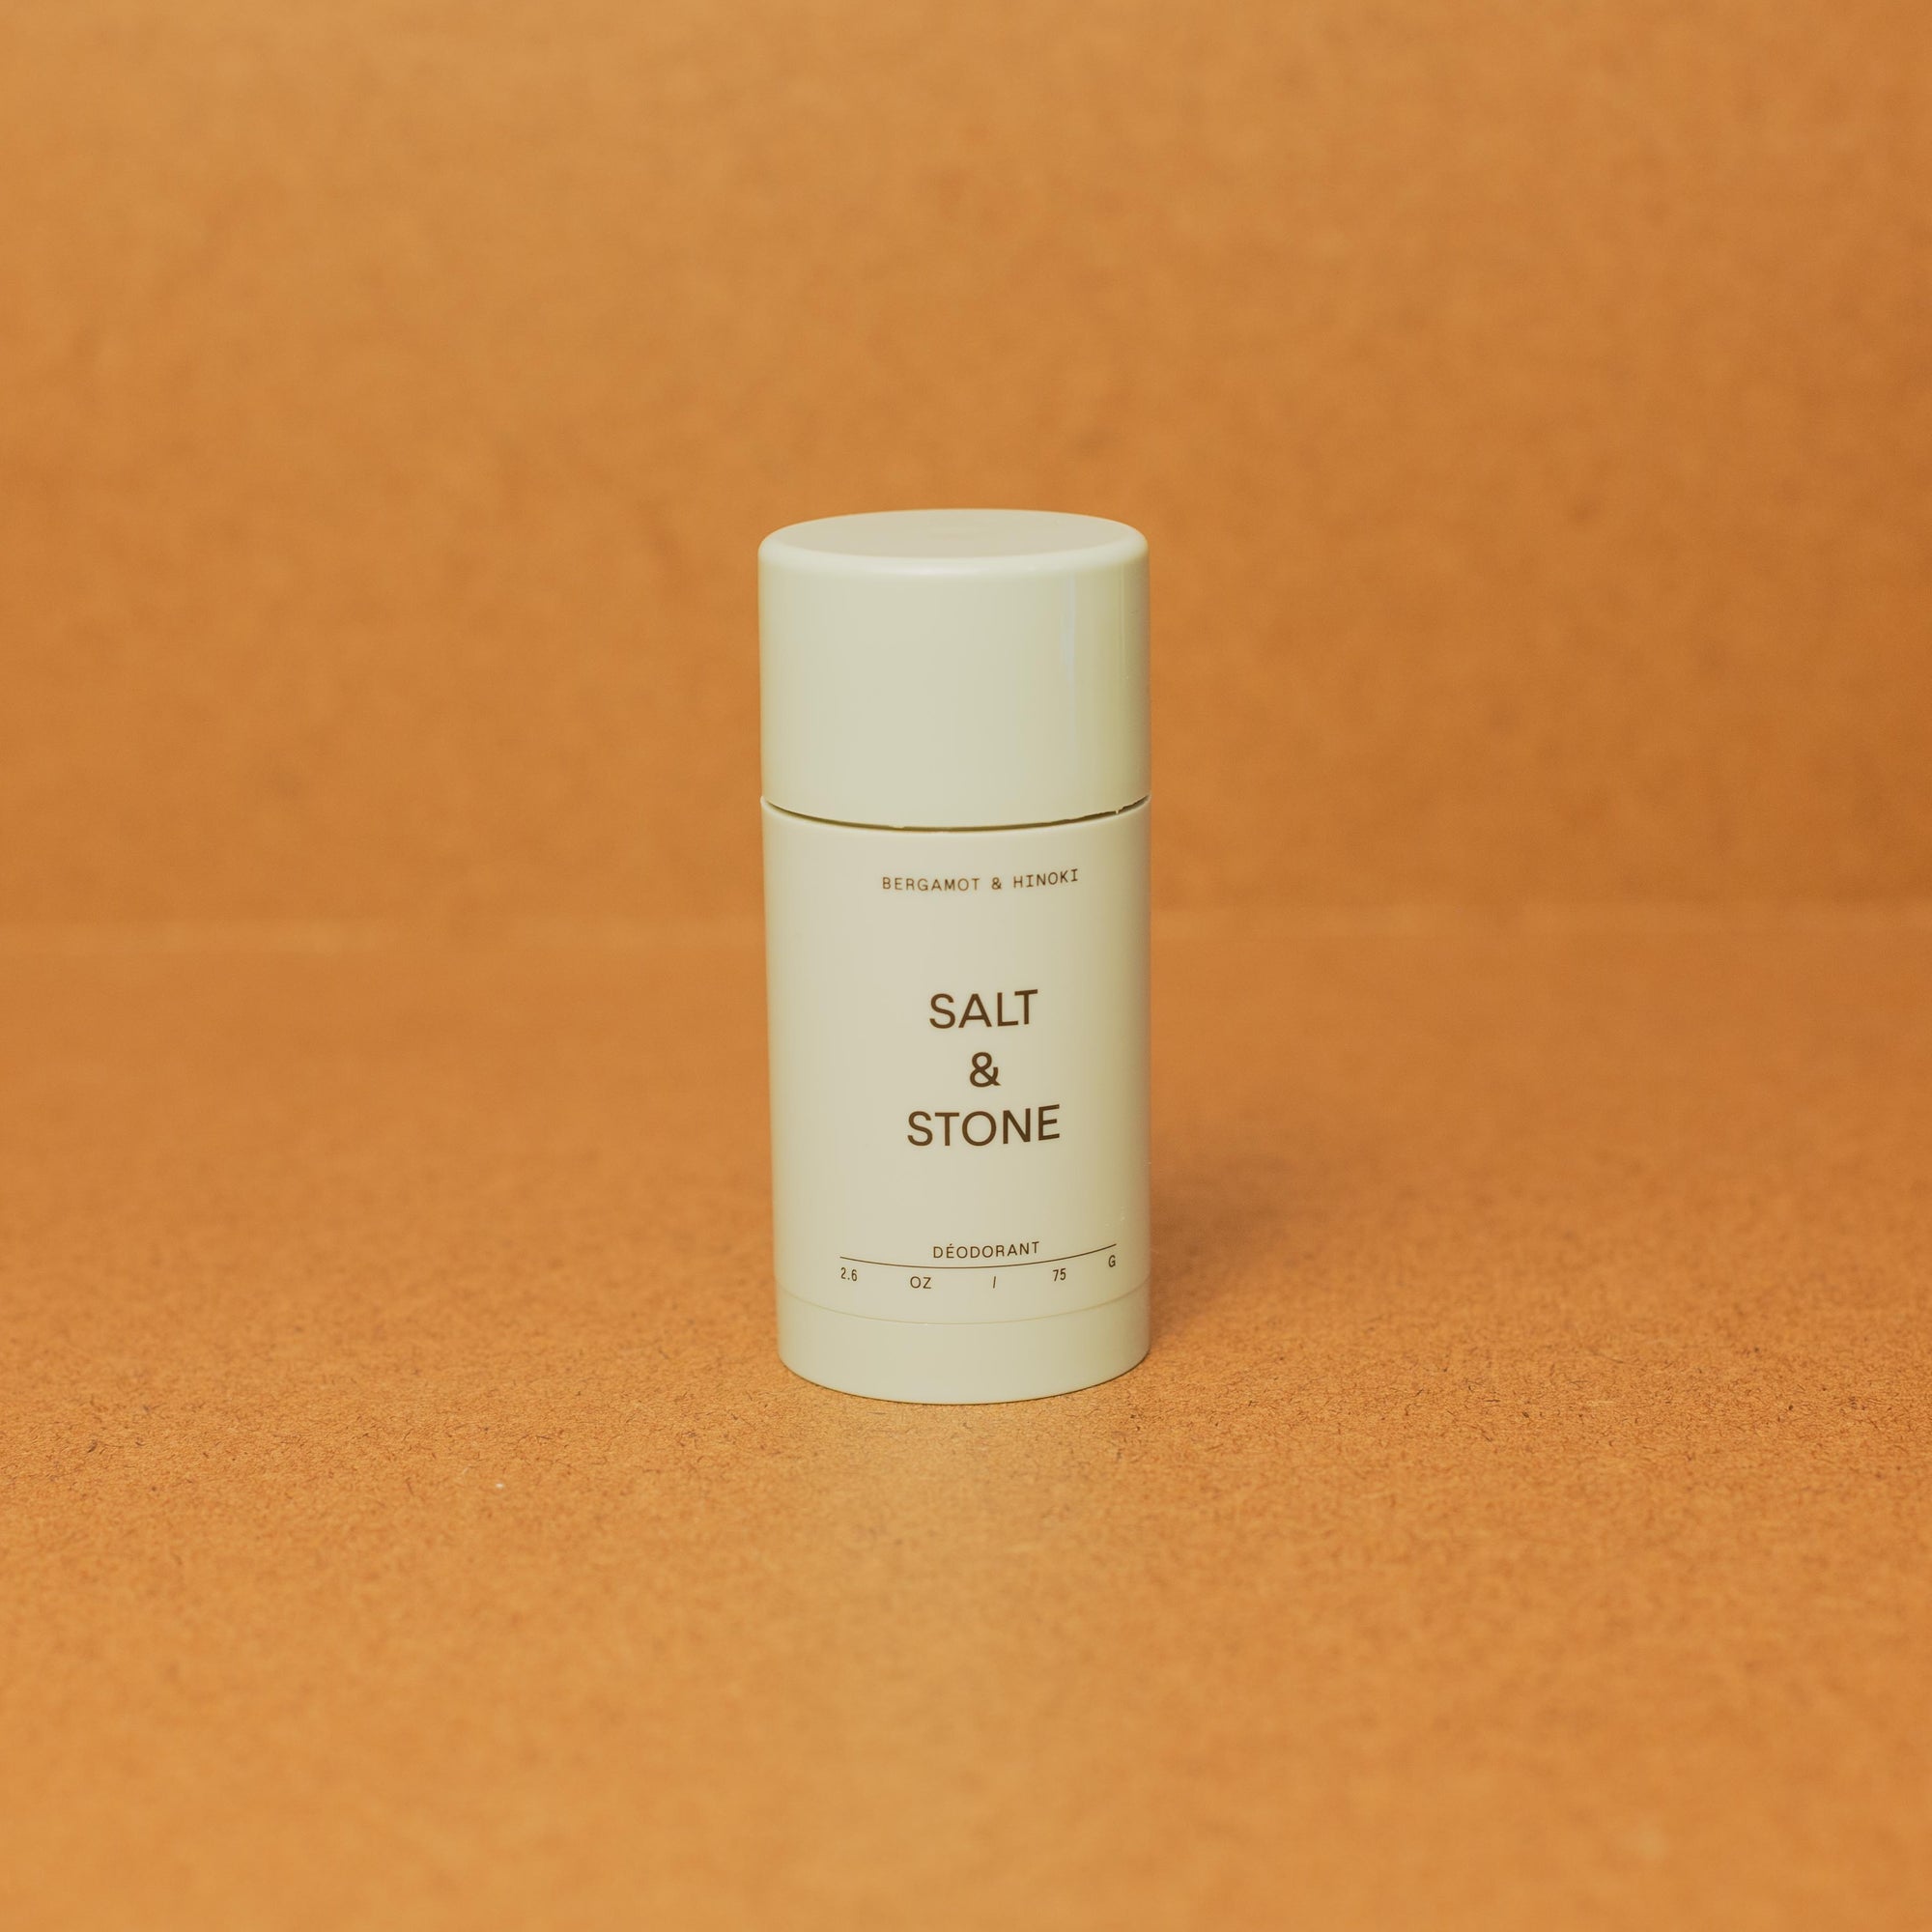 Salt and Stone Deodorant - Bergamont & Hinoki brown background